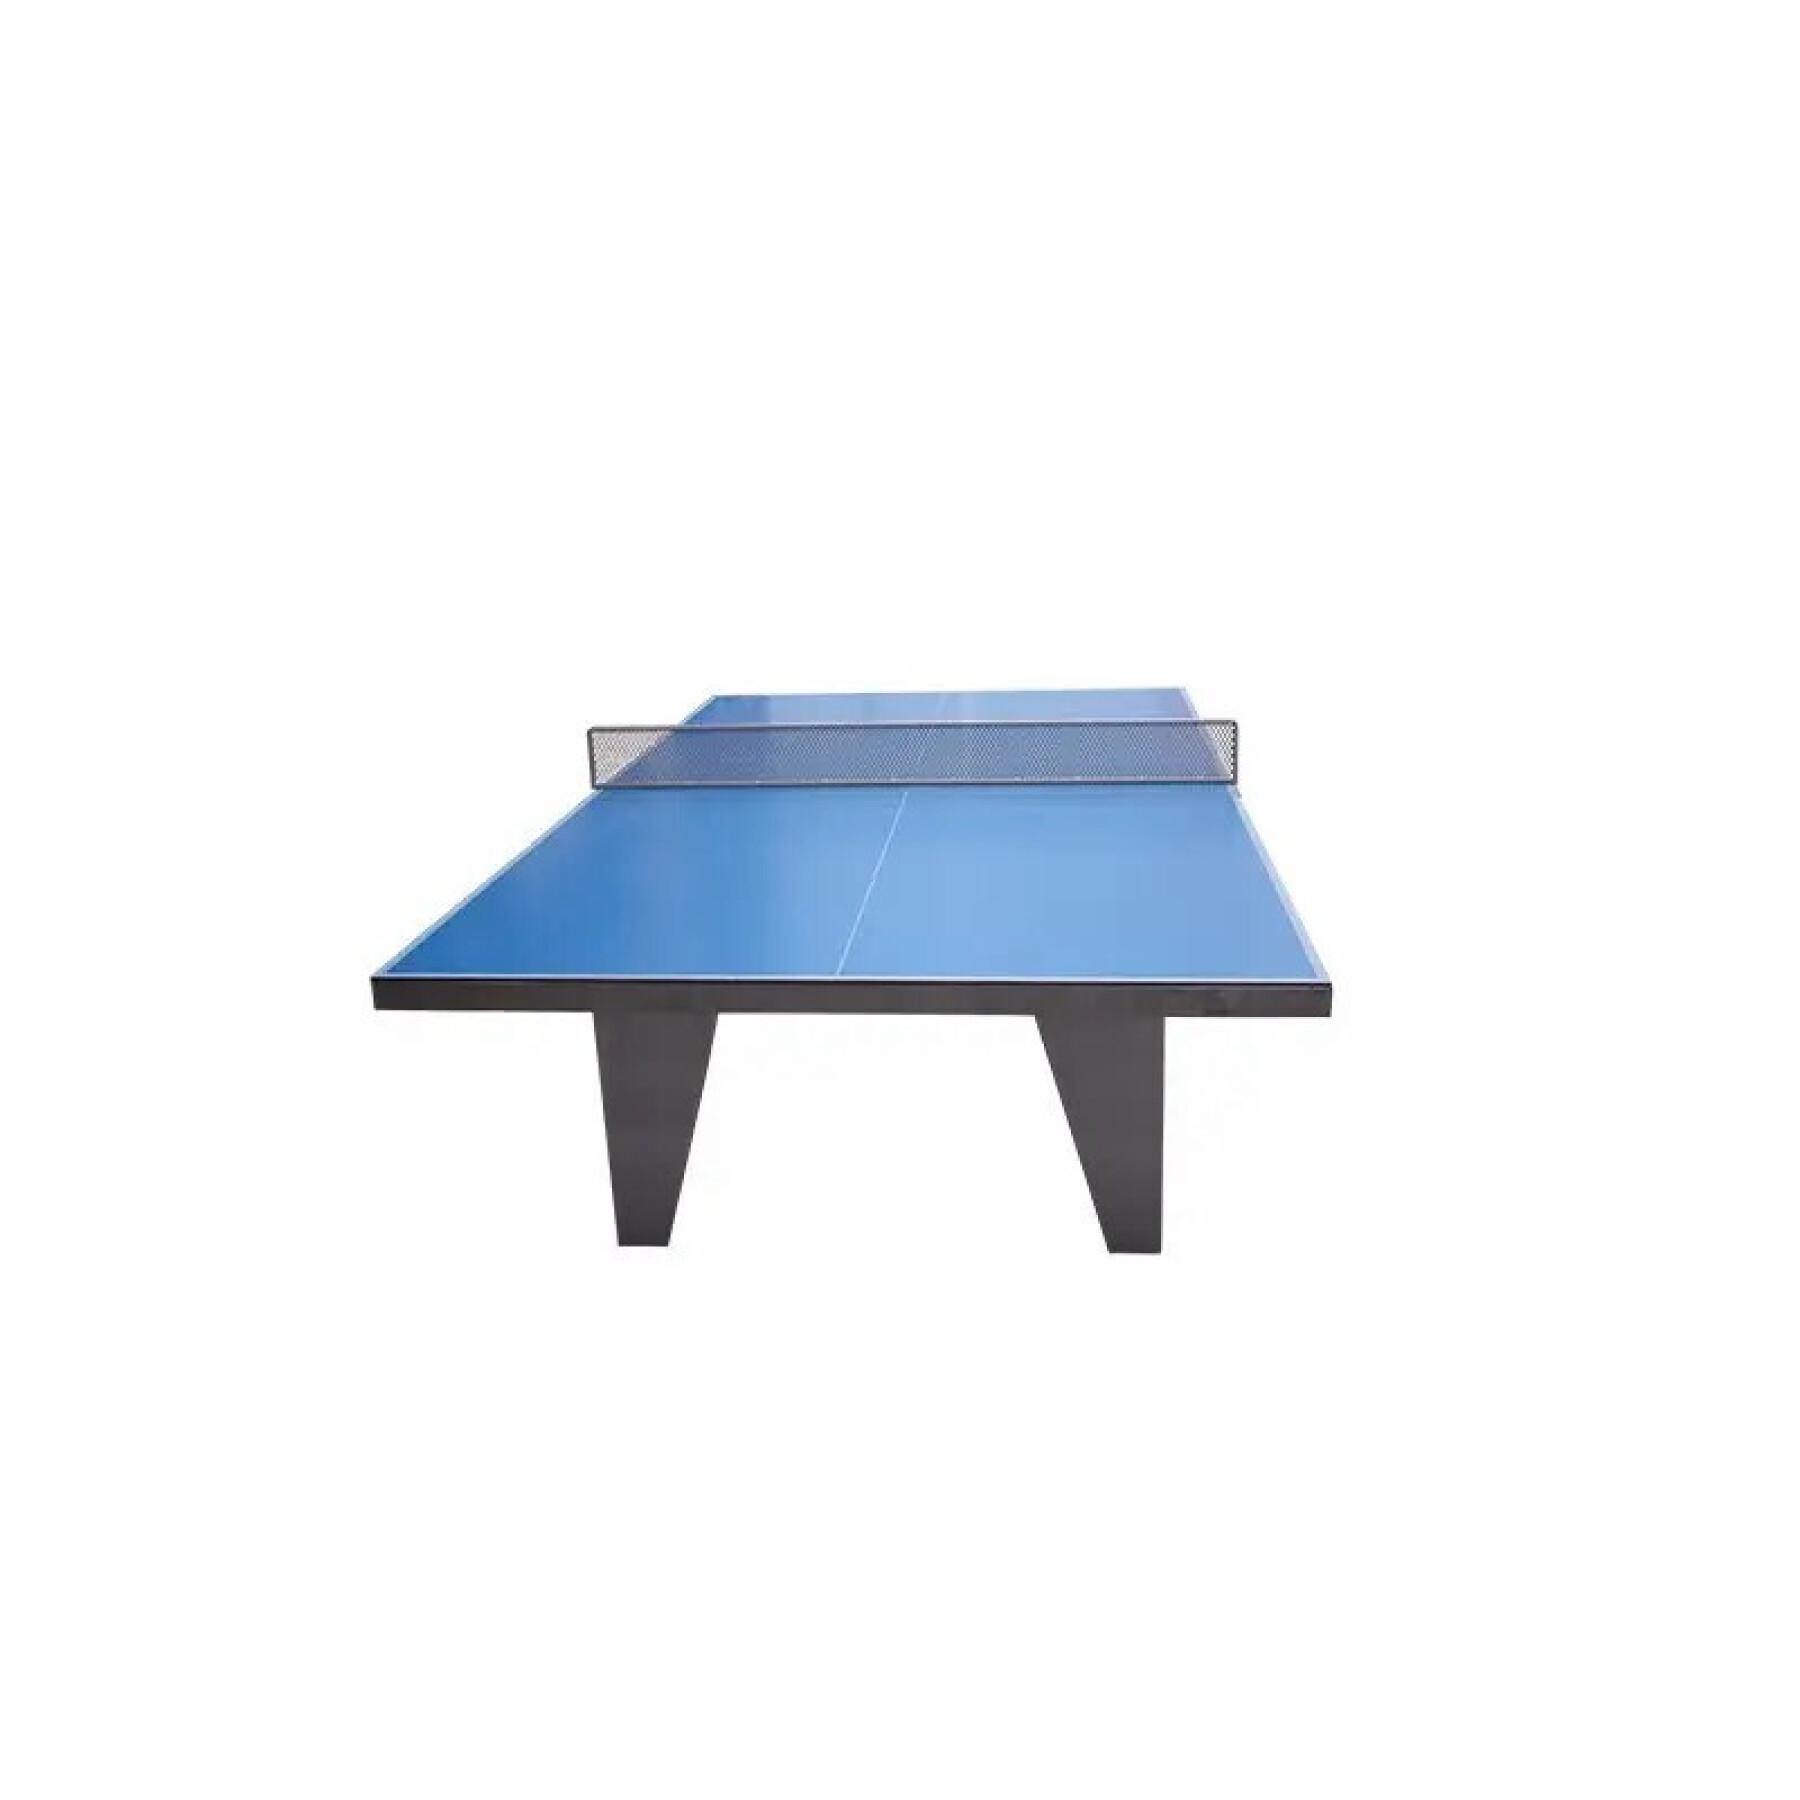 Anti-vandal metal table tennis net Softee